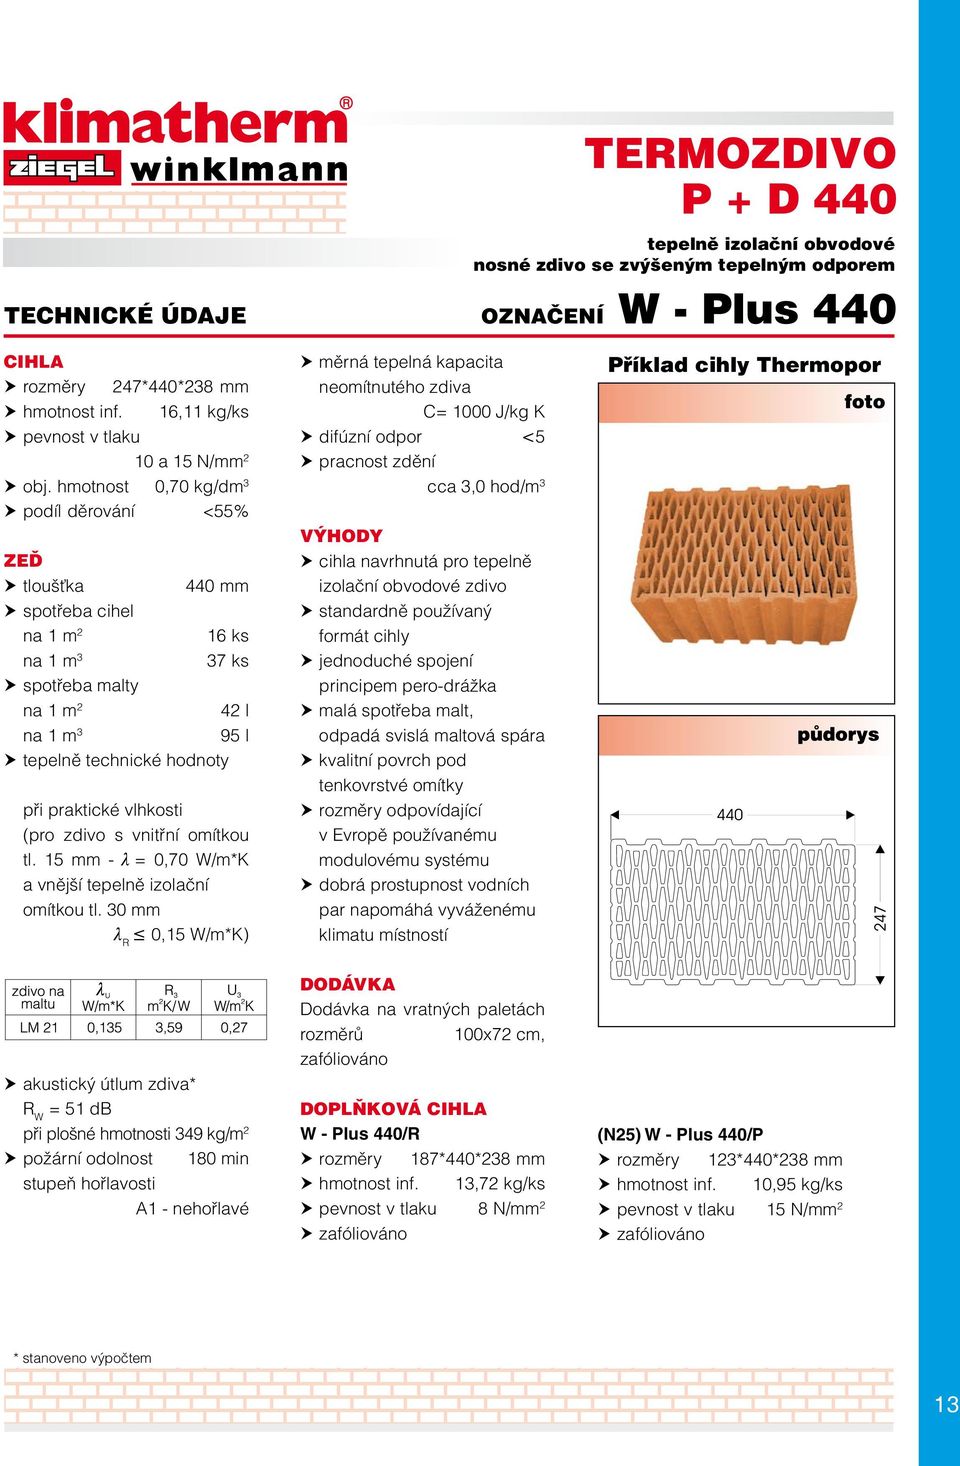 30 mm l R 0,15 W/m*K) měrná tepelná kapacita neomítnutého zdiva C= 1000 J/kg K difúzní odpor <5 cca 3,0 hod/m 3 cihla navrhnutá pro tepelně izolační obvodové zdivo standardně používaný formát cihly